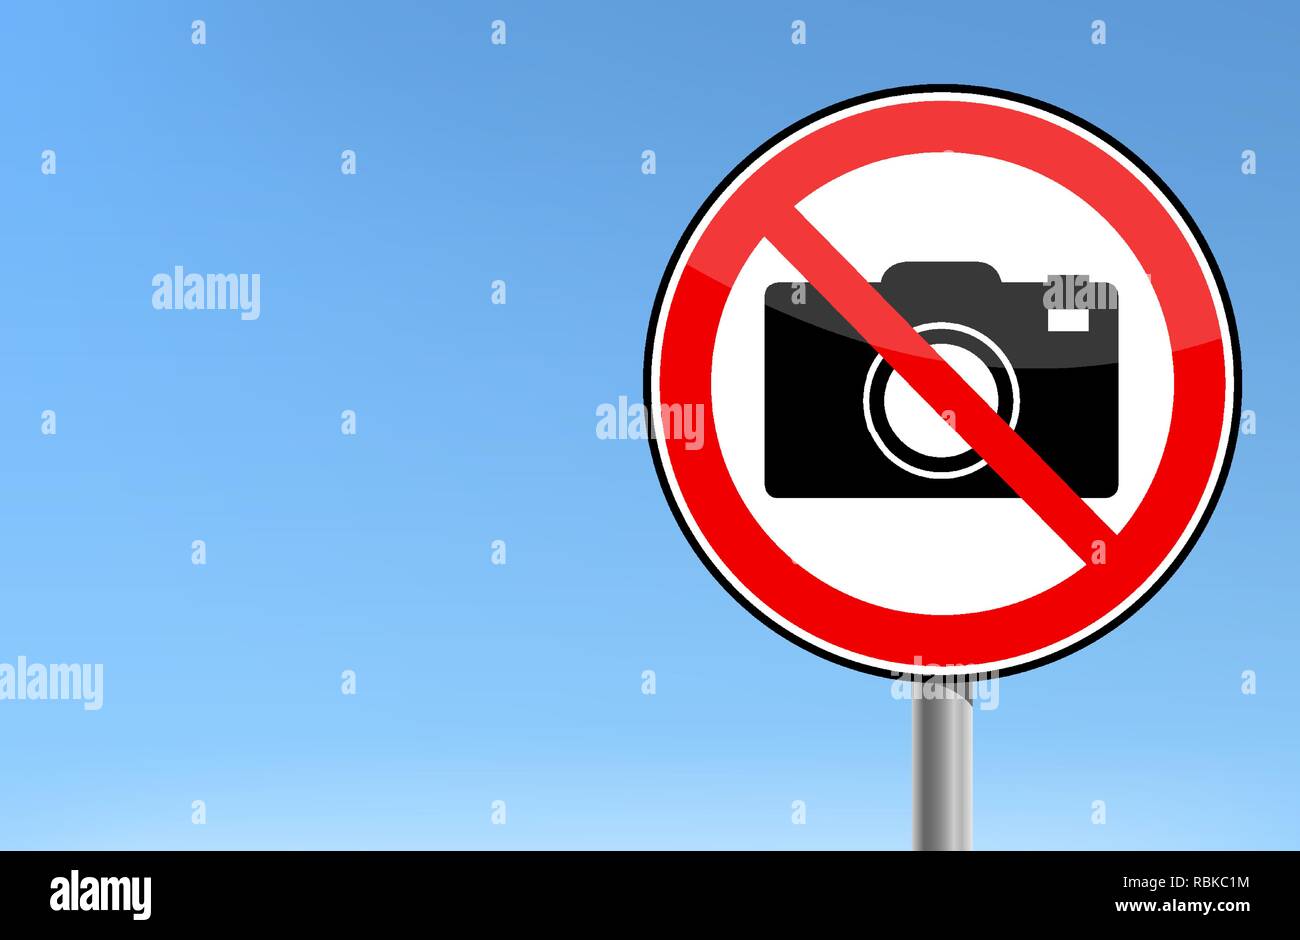 no photo - camera forbidden sign Stock Vector